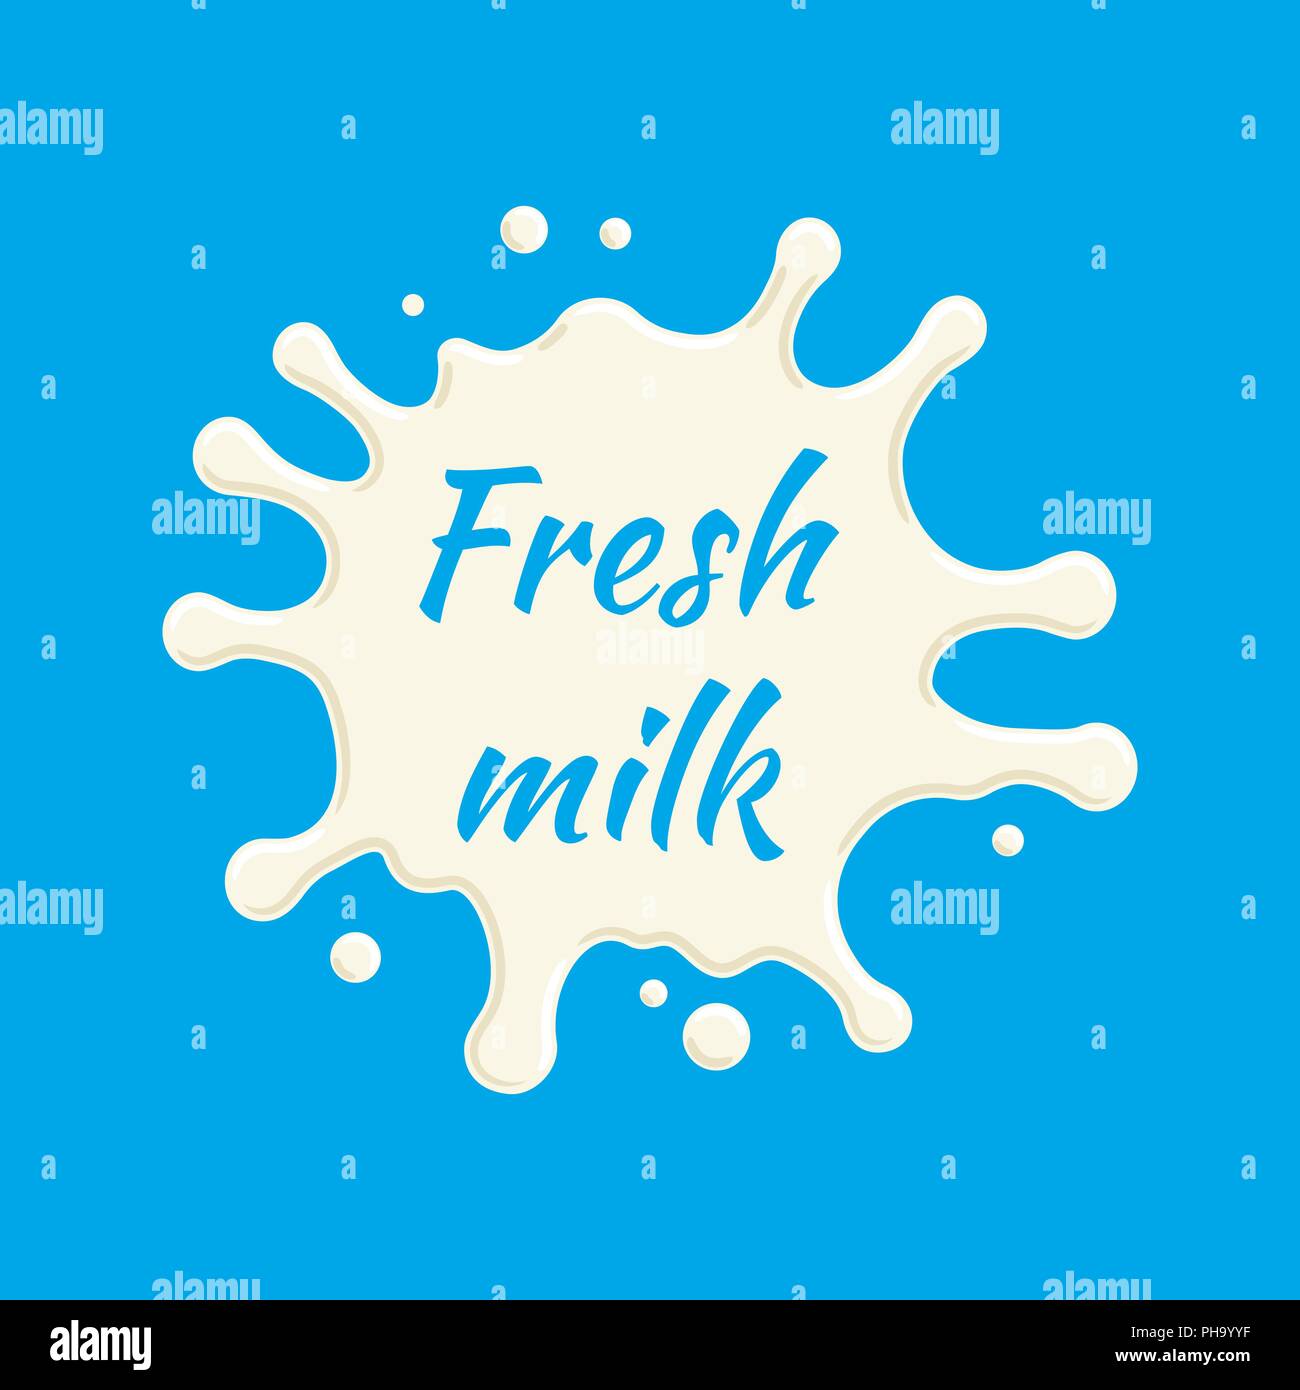 Vecteur de l'étiquette du lait frais. Splash de lait et blot design, forme creative illustration. Illustration de Vecteur